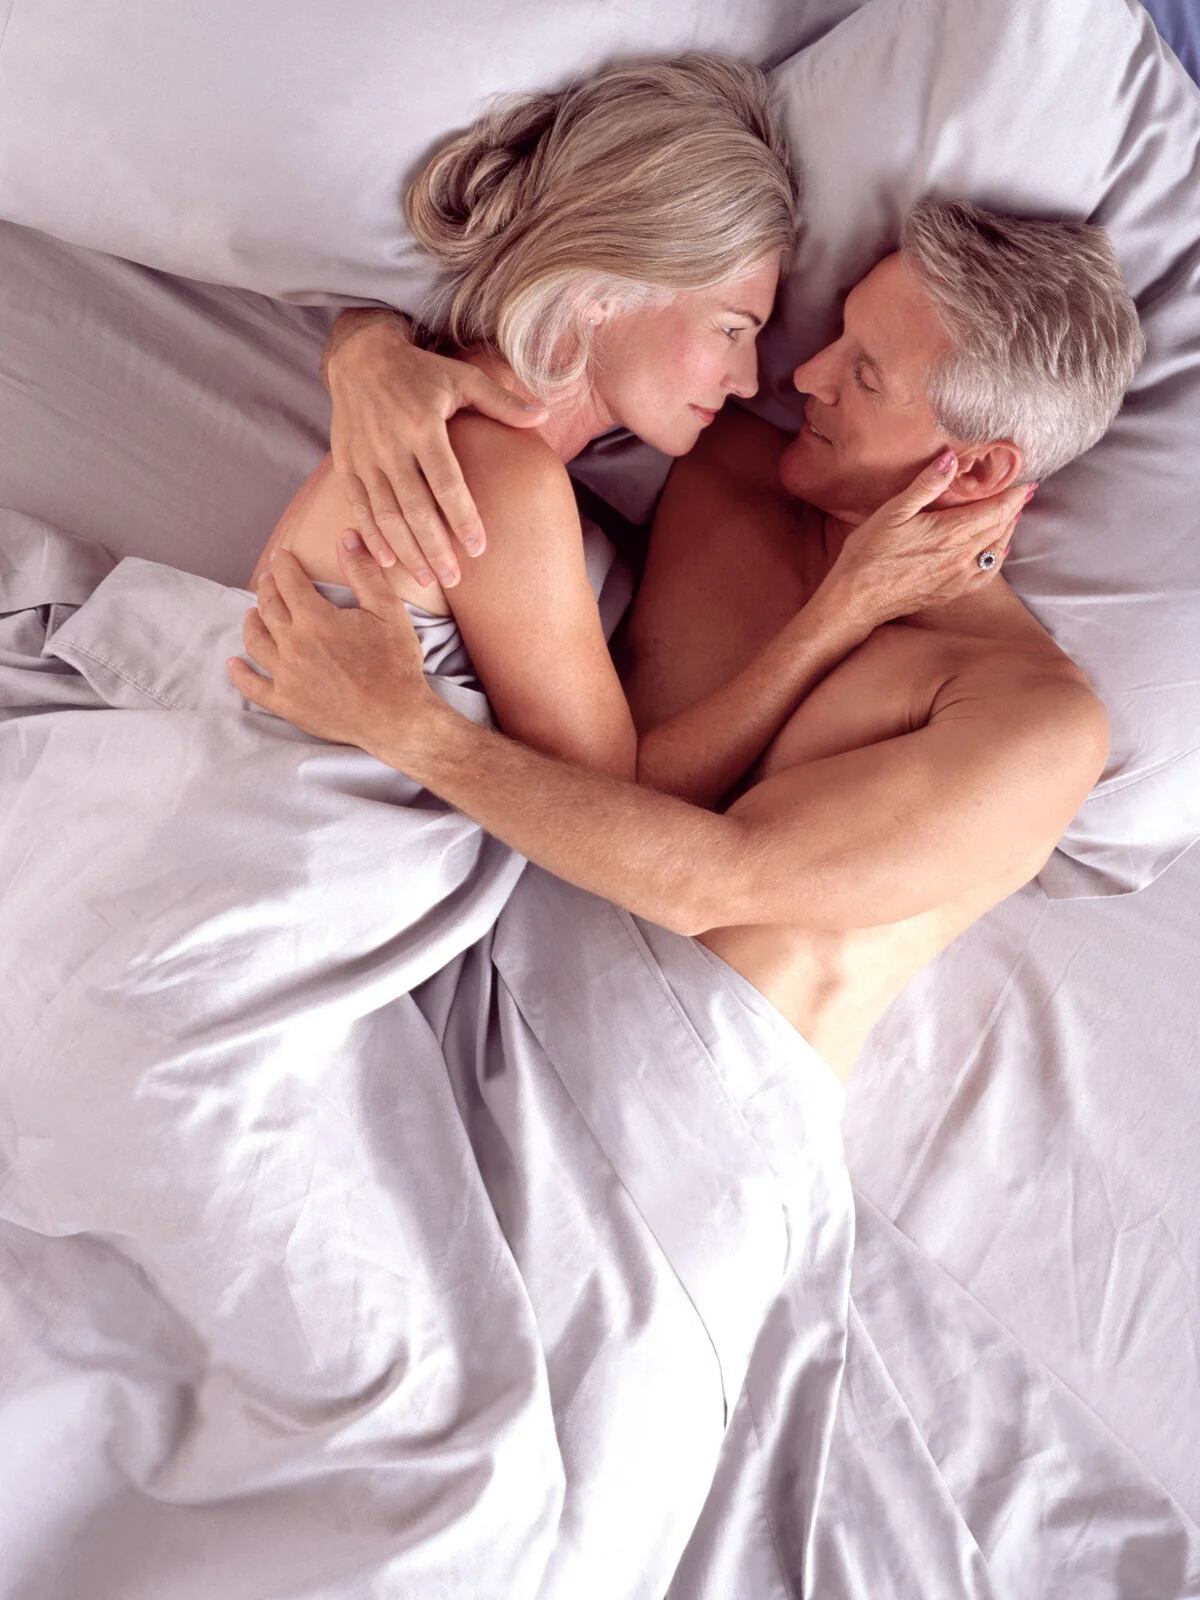 Sexo en adultos mayores - Erección y orgasmo de tu pareja